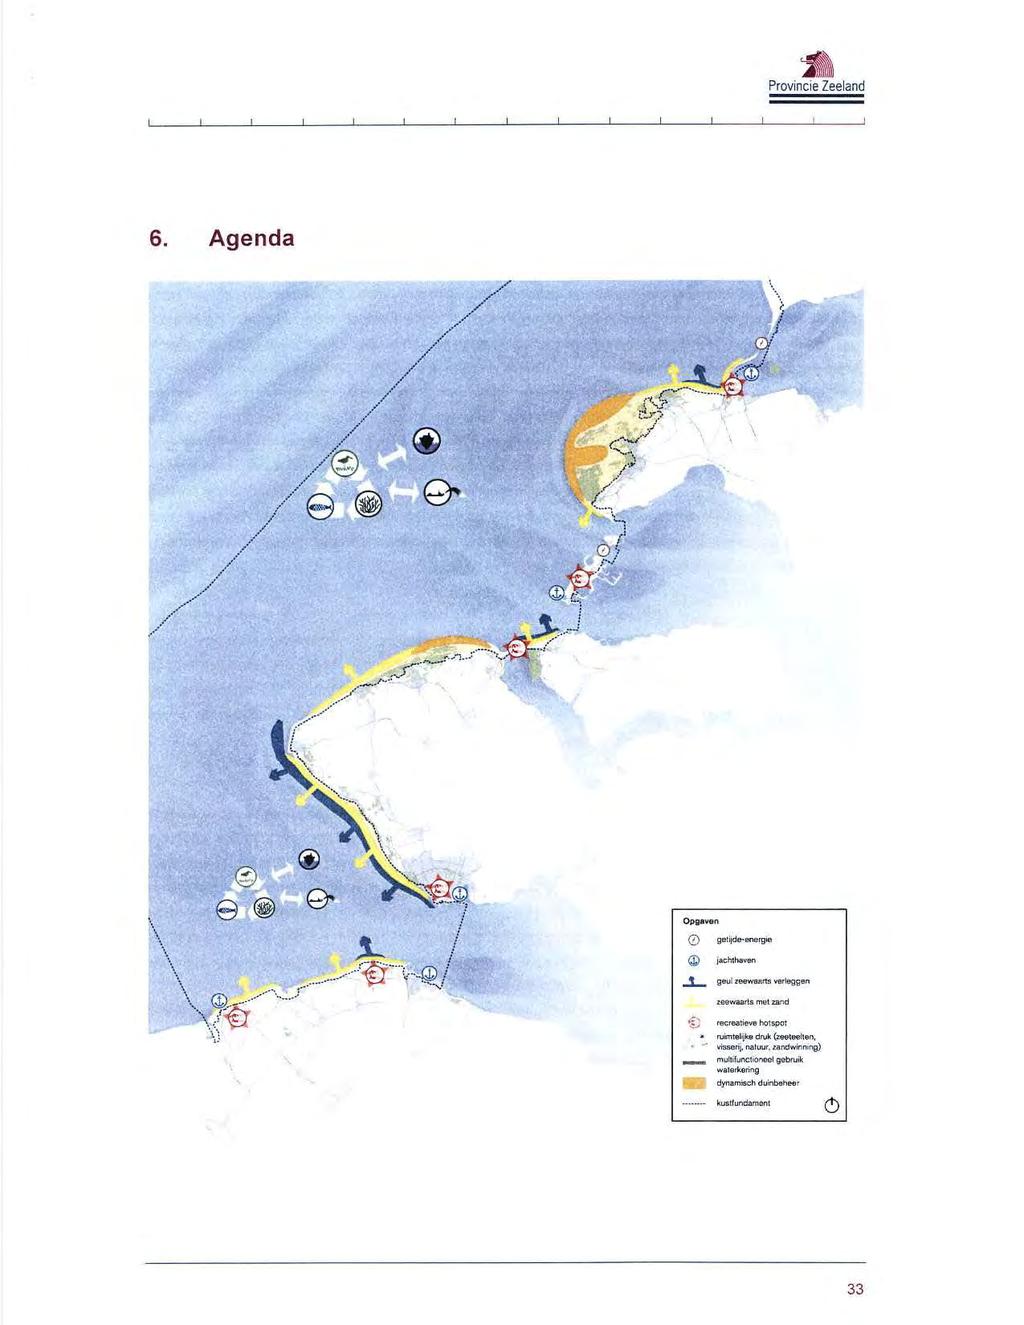 - 6. Agenda \ Opgaven getijde~ 0 energie jachthaven geul zeewaarts verleggen zqéwaarts met zand re~reatîeve ho1s.